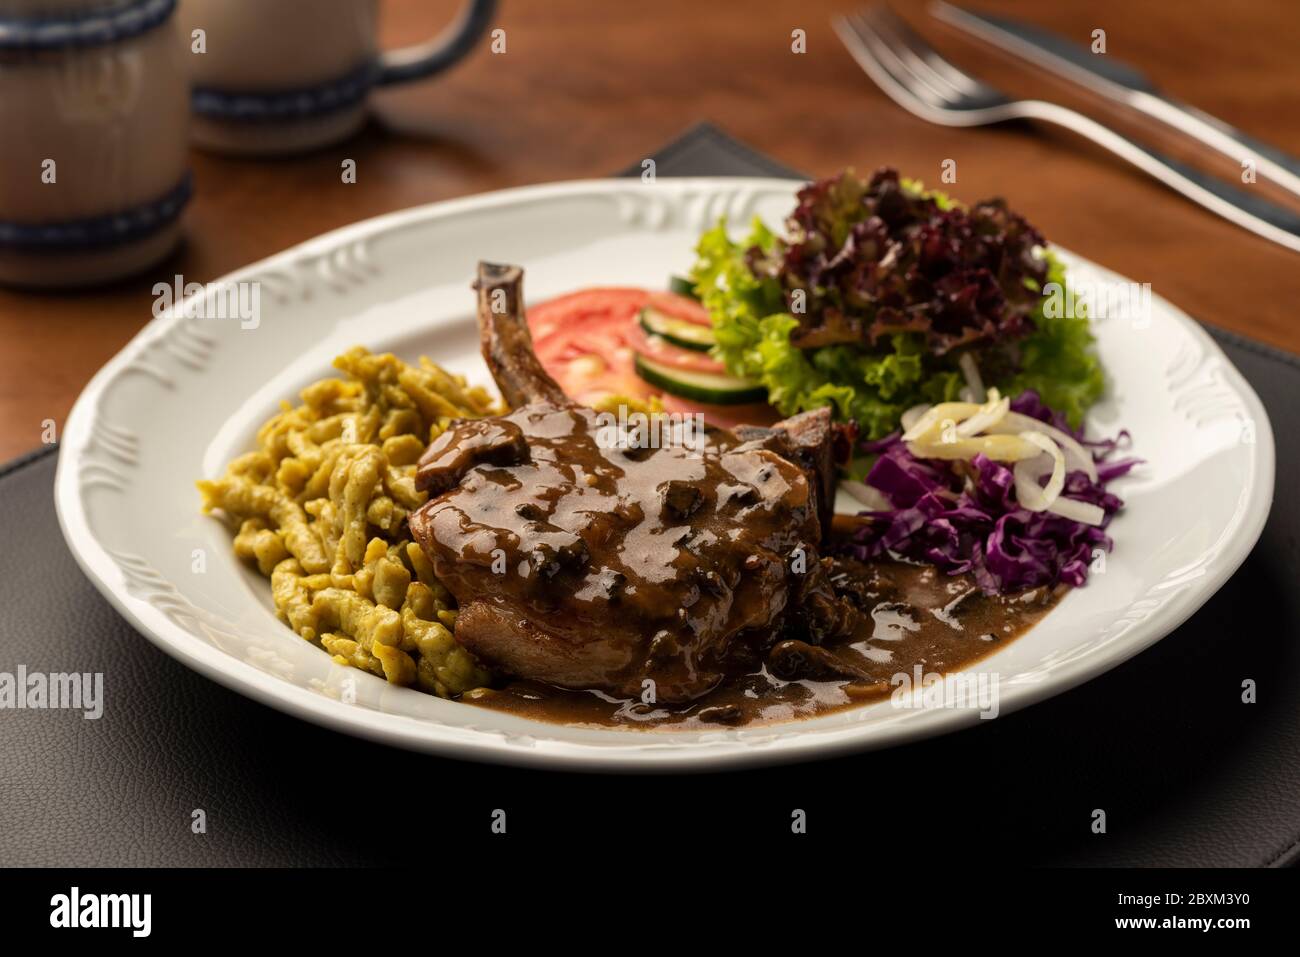 steak d'oeil côtelé avec salade de spaetzle sur tapis en cuir et table en bois sur fond flou Banque D'Images